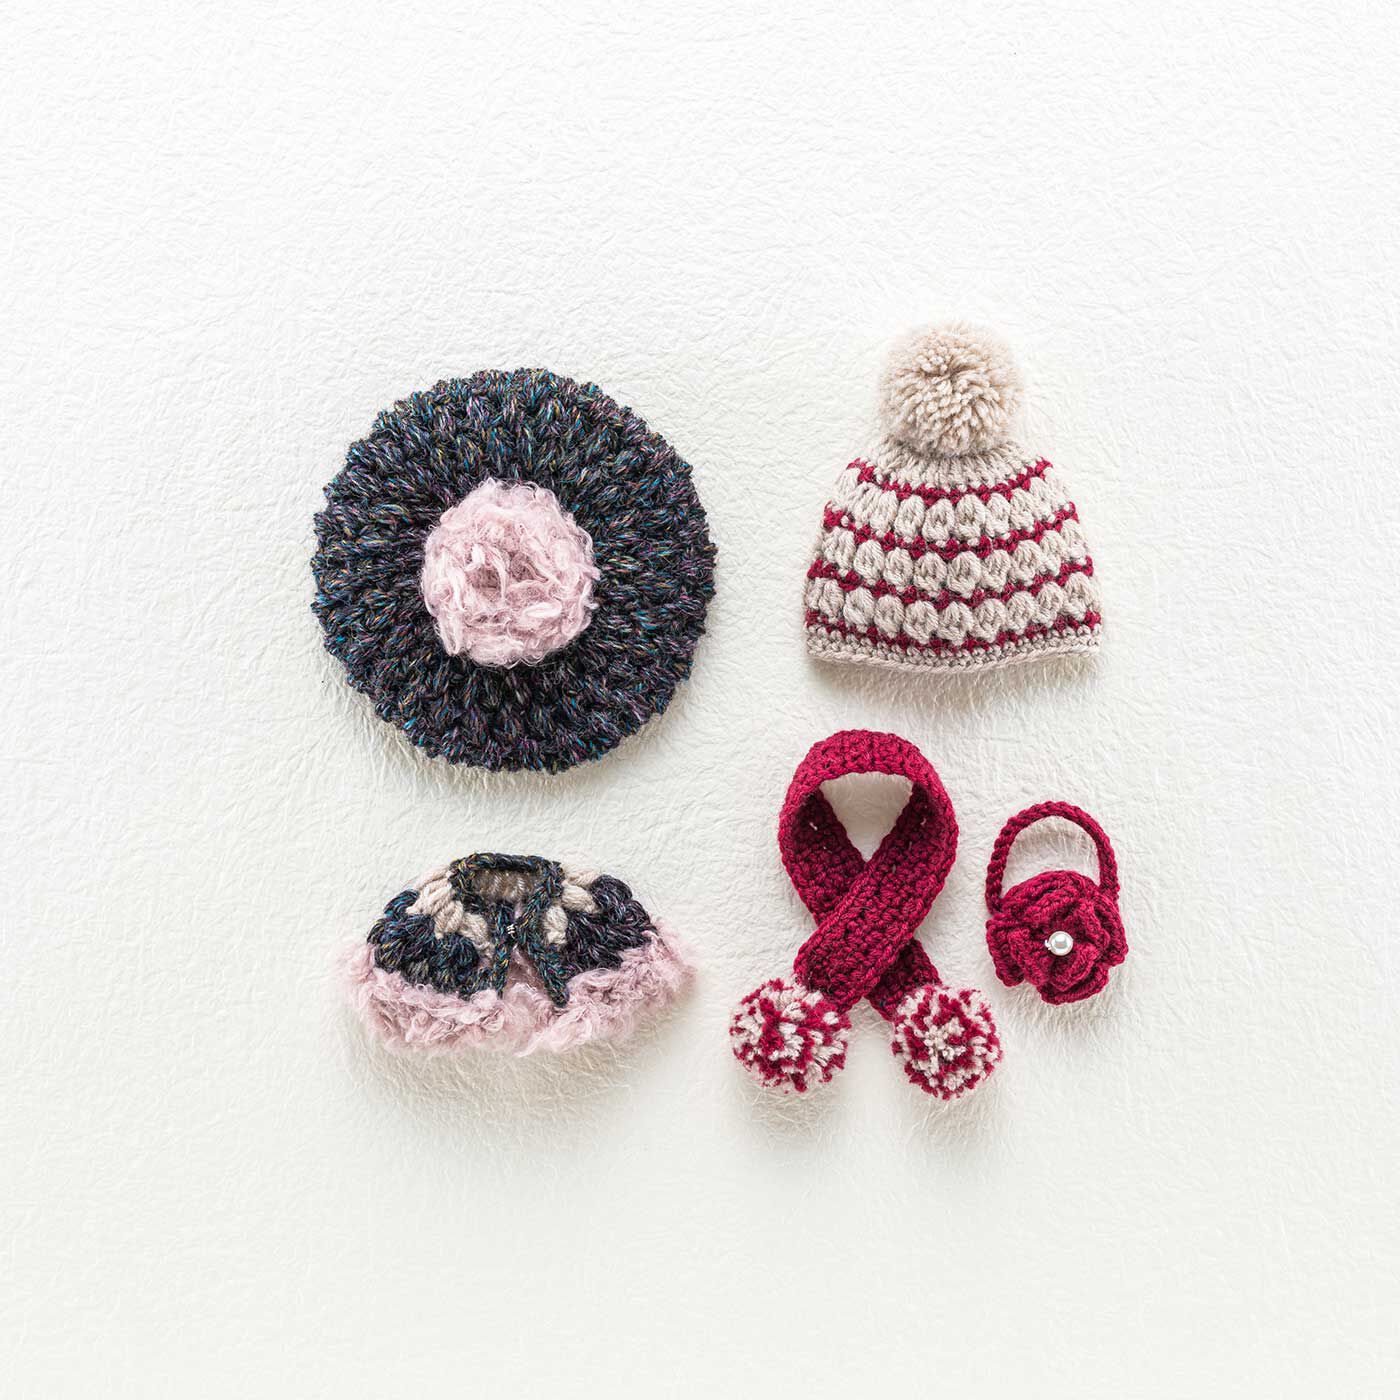 クチュリエ|寒さが待ち遠しくなる ドール用かぎ針編み帽子と小物のキット|LサイズかMサイズ、どちらかを選んで作れます（画像はMサイズ）。